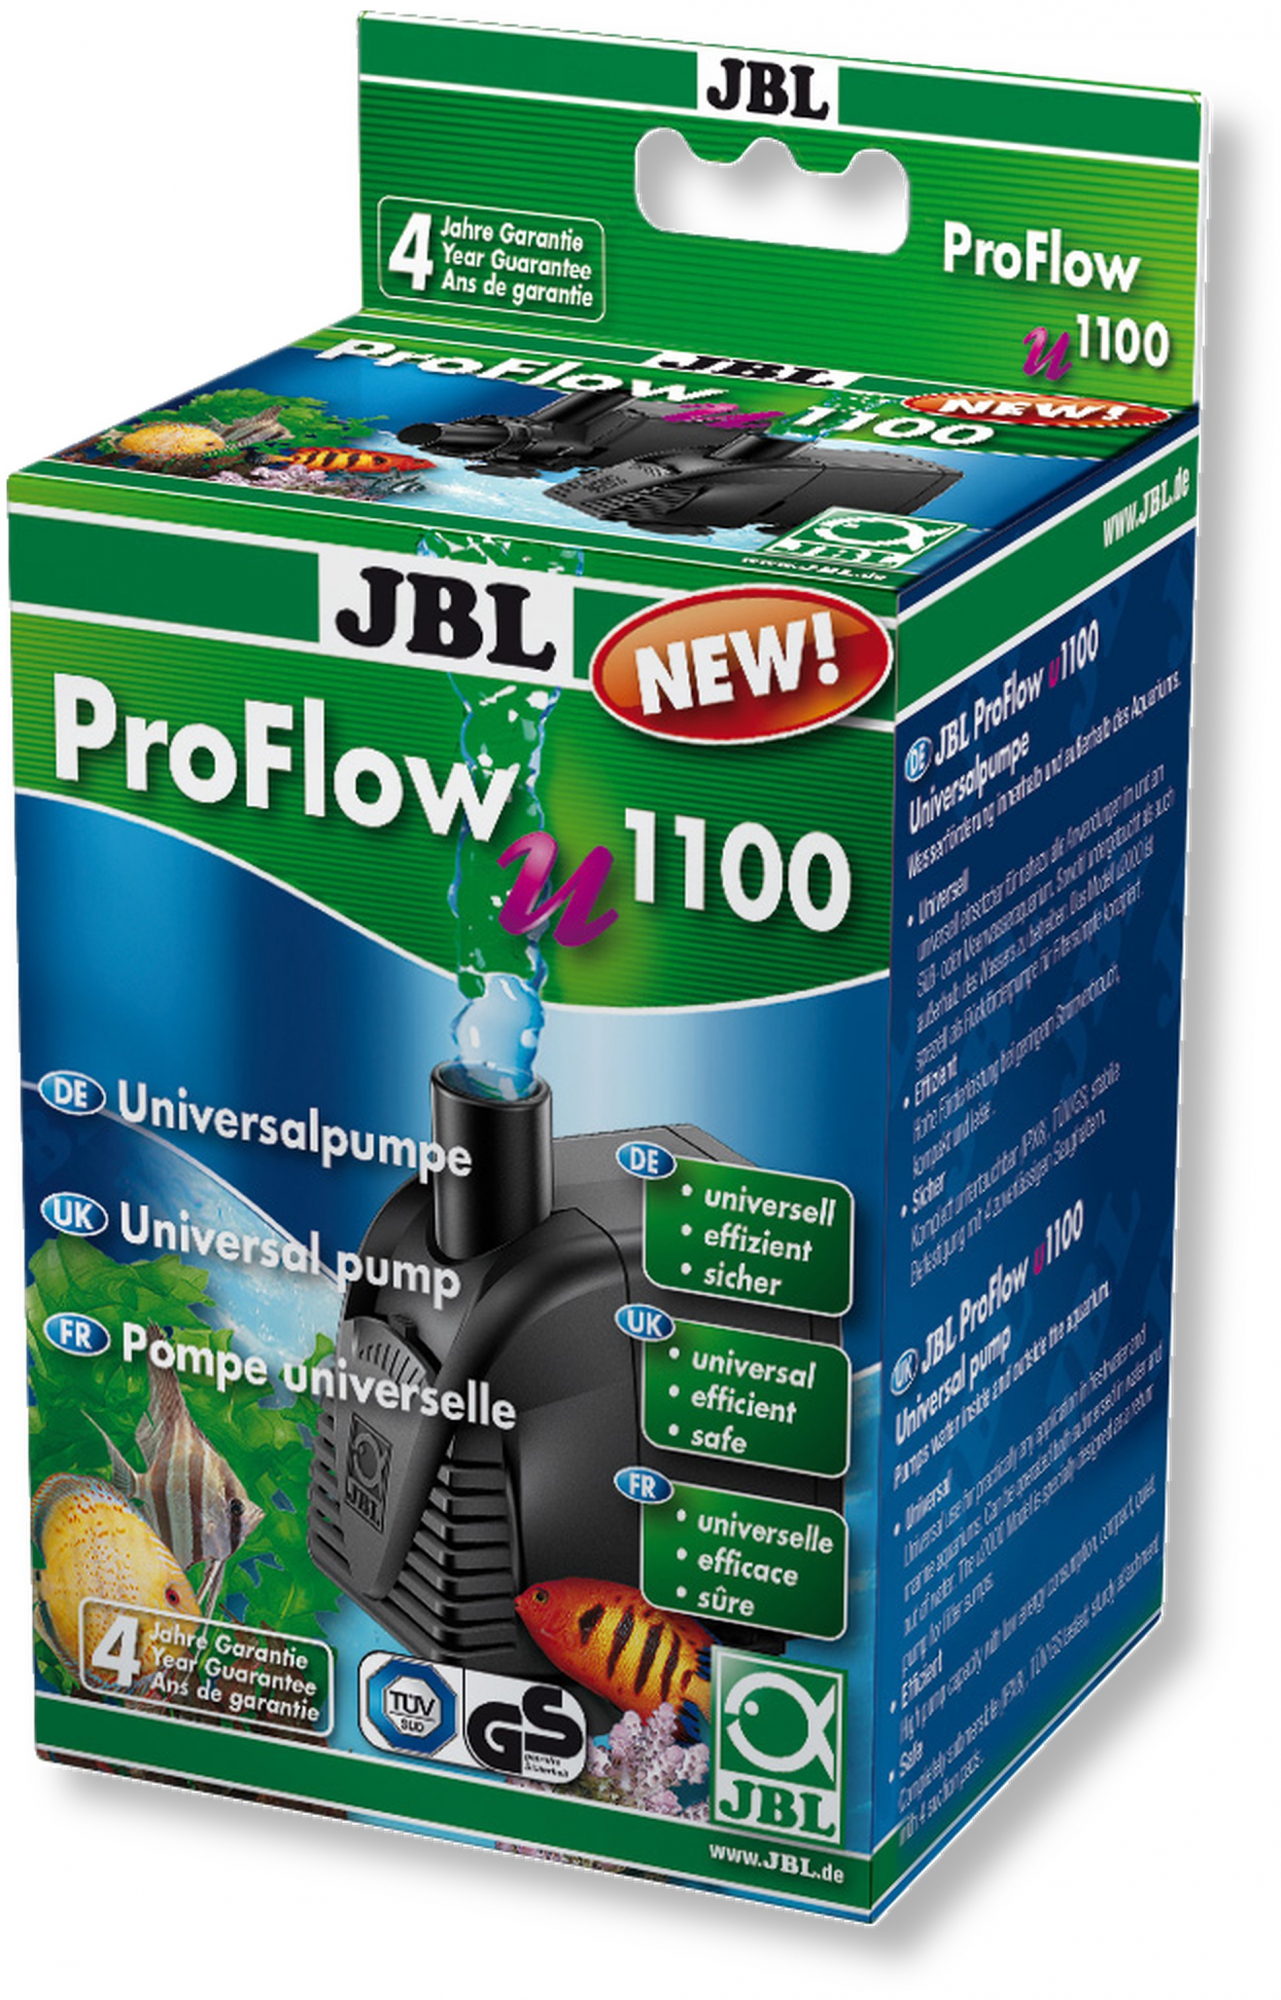 JBL Proflow Bomba universal - vários modelos disponíveis